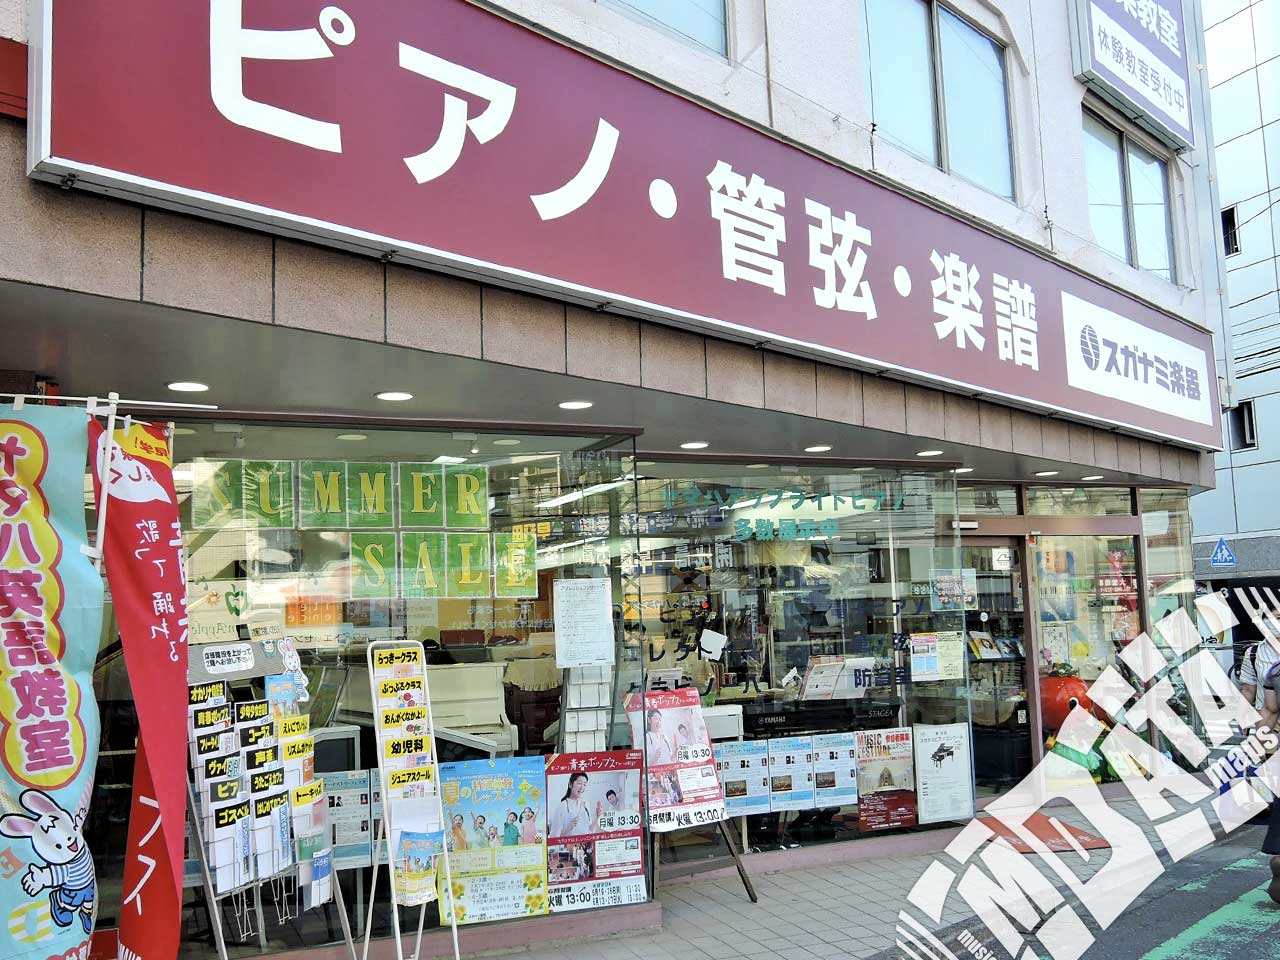 スガナミ楽器 町田店の写真 撮影日:2017/7/10 Photo taken on 2017/07/10